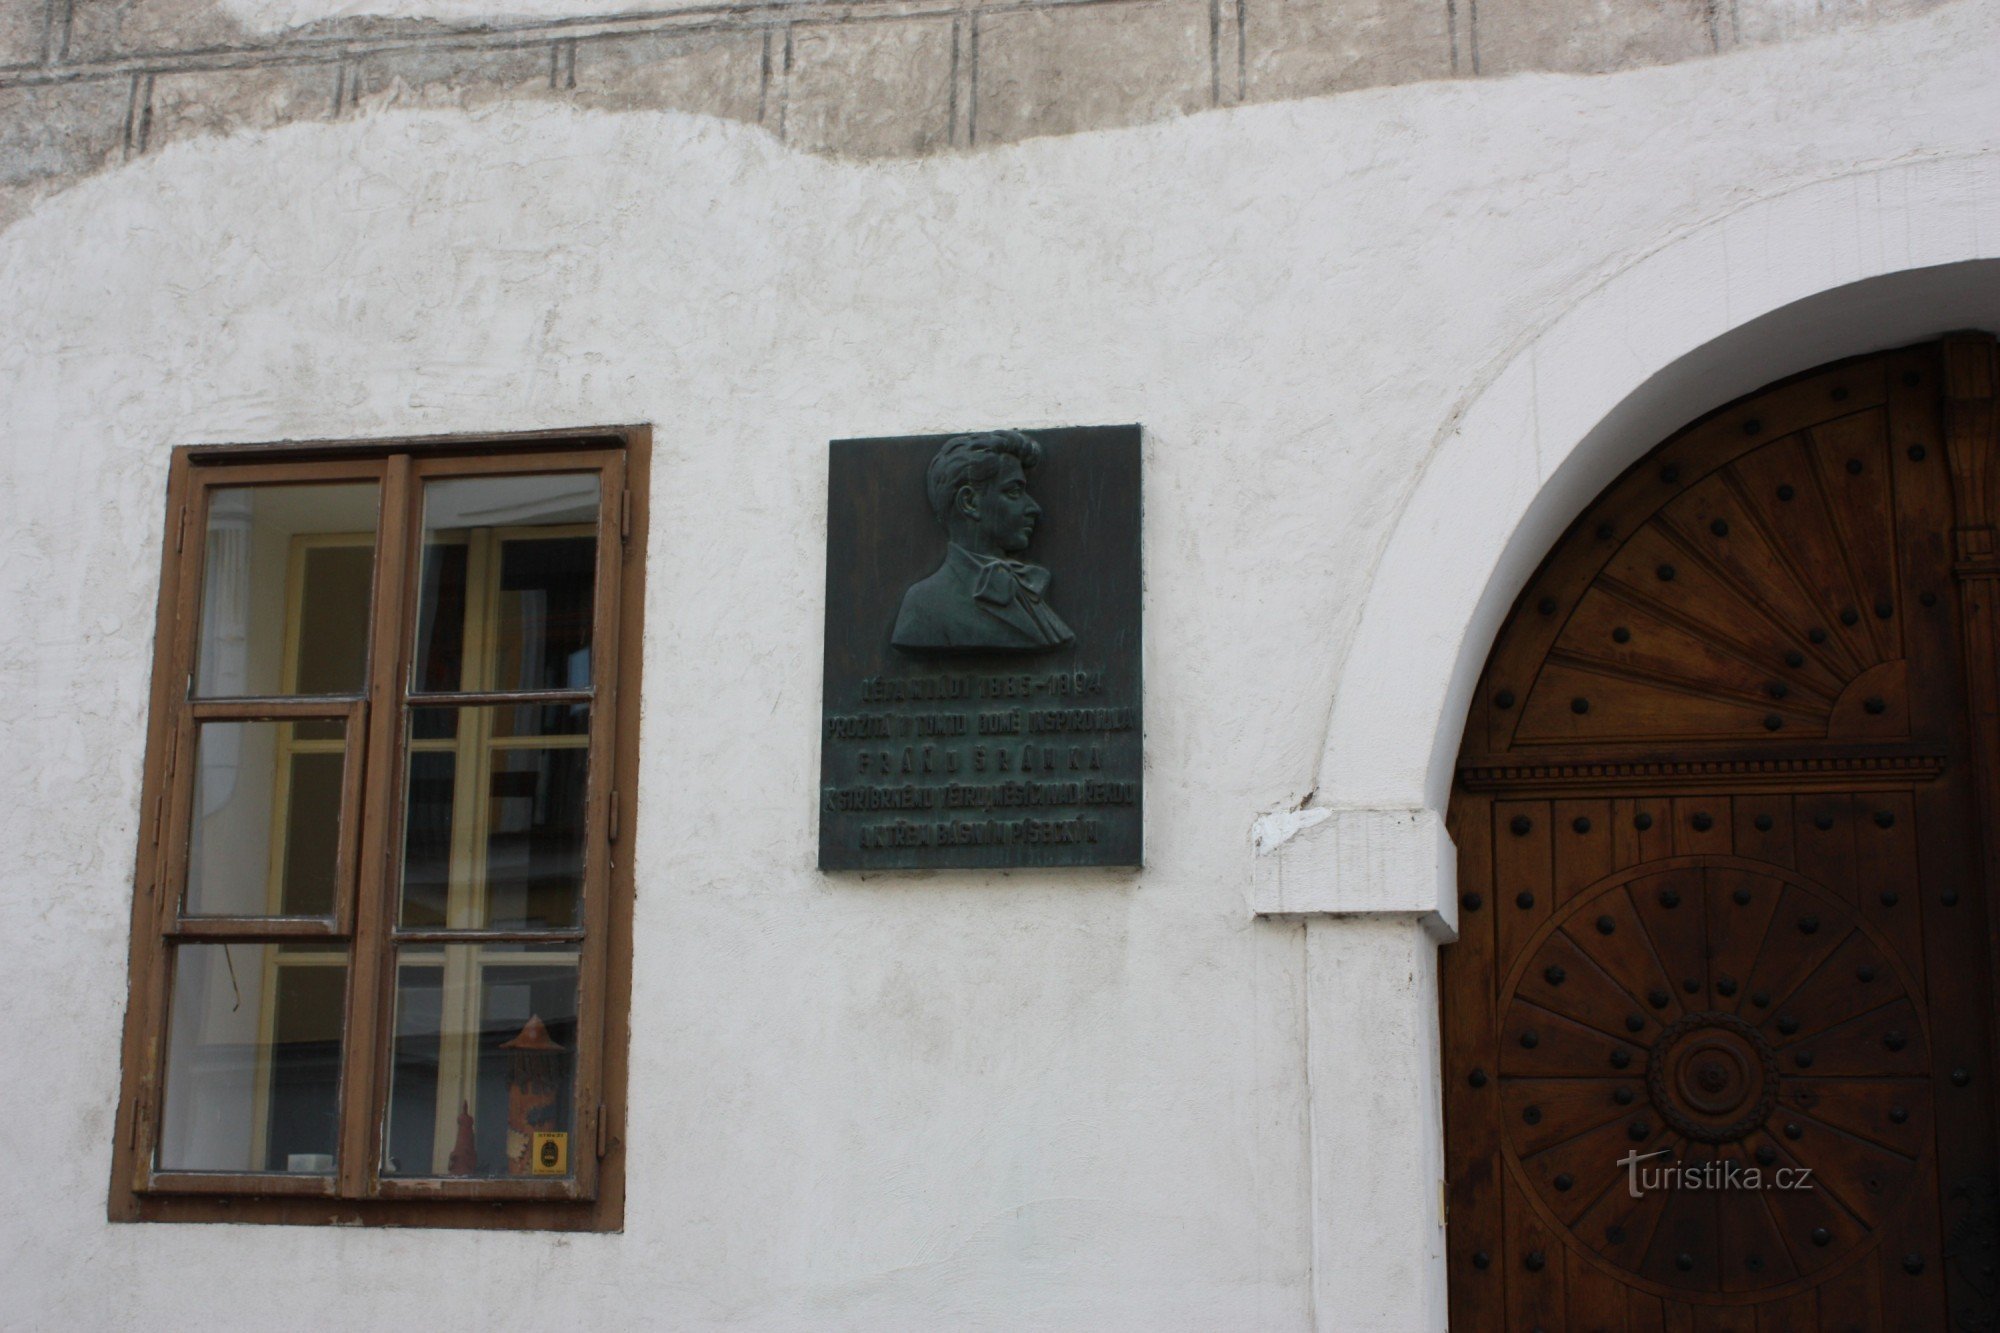 Emléktábla azon a házon, ahol Fráňa Šrámek lakott